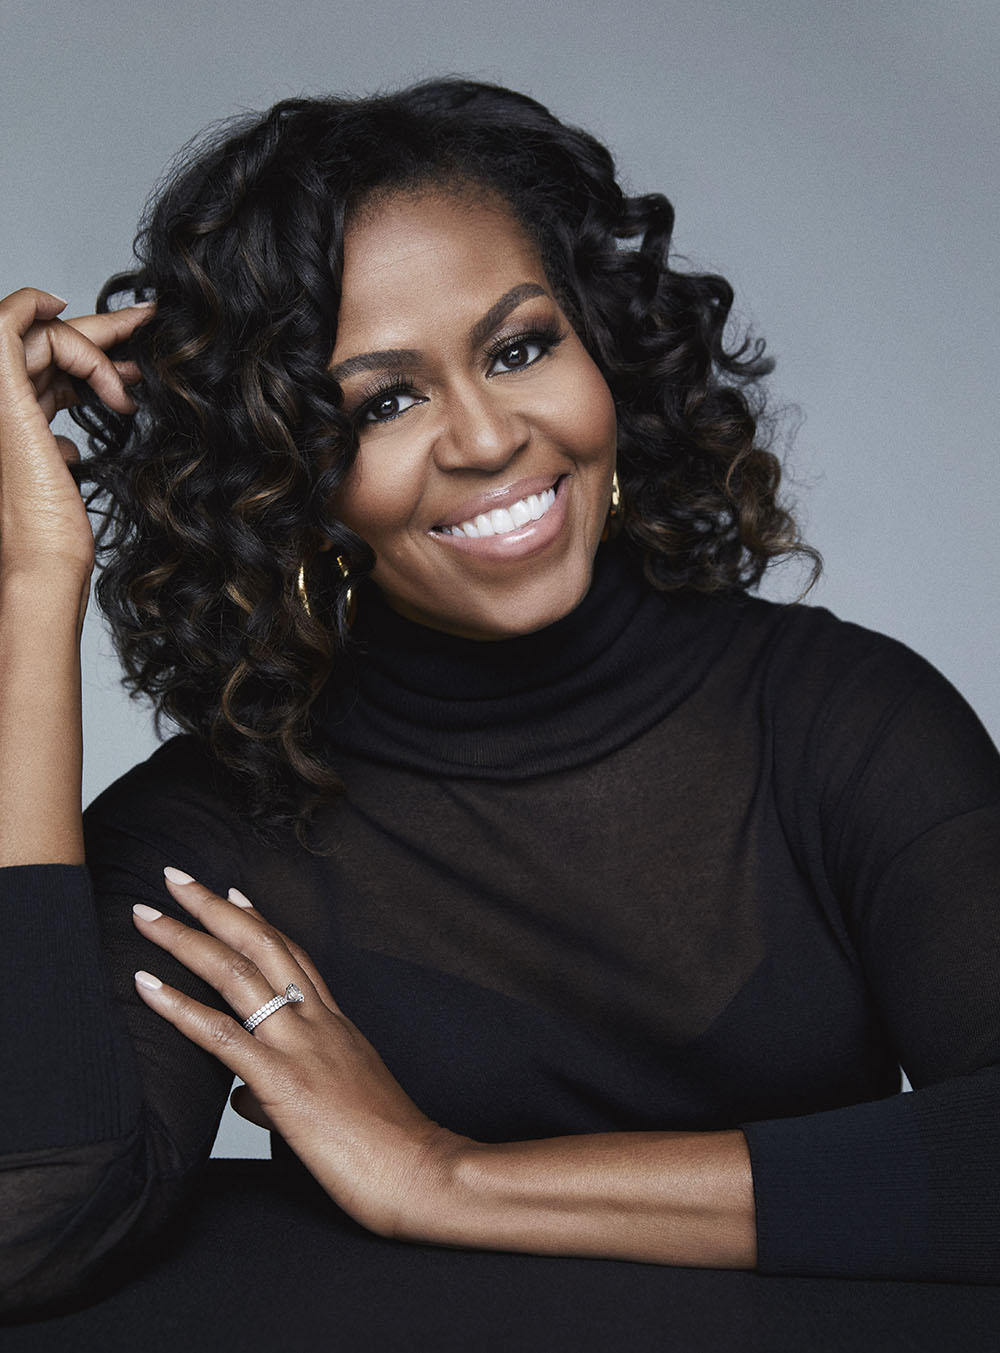 Con luz propia, el nuevo libro de Michelle Obama - Zenda